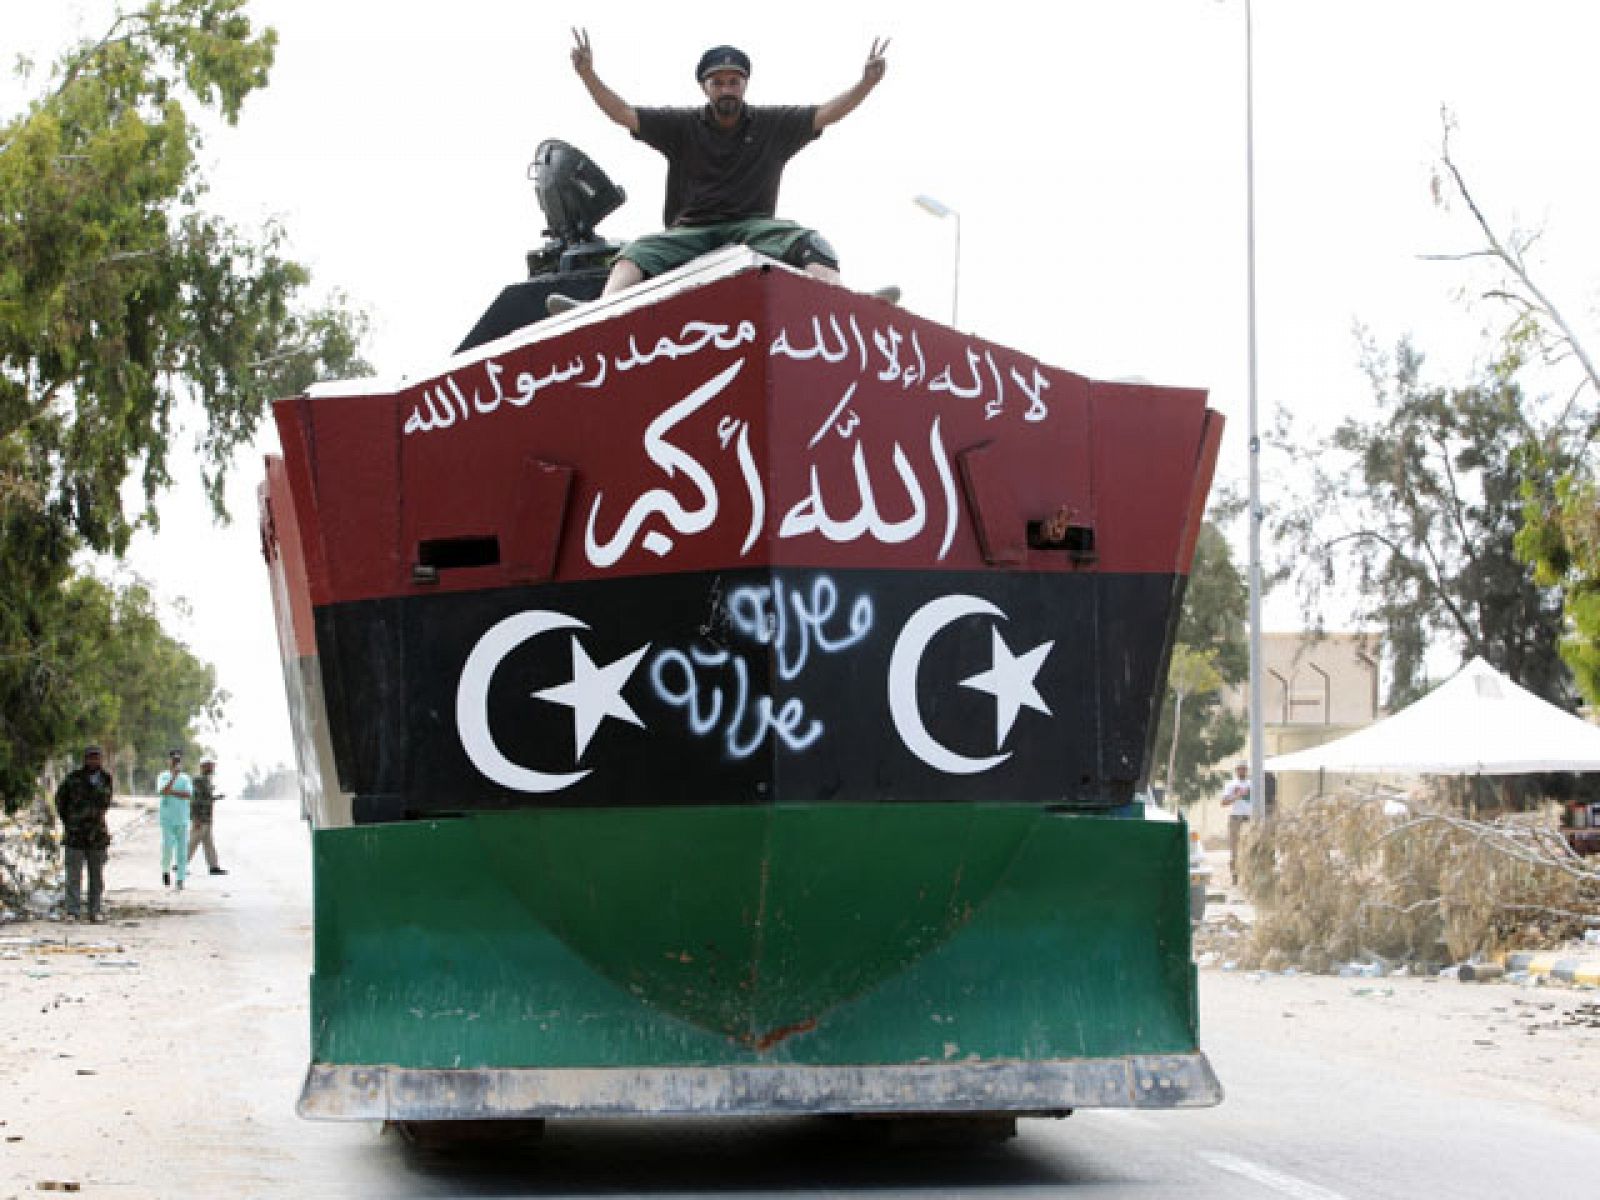 Imagen del vehículo de defensa elaborado por los rebeldes en Misrata